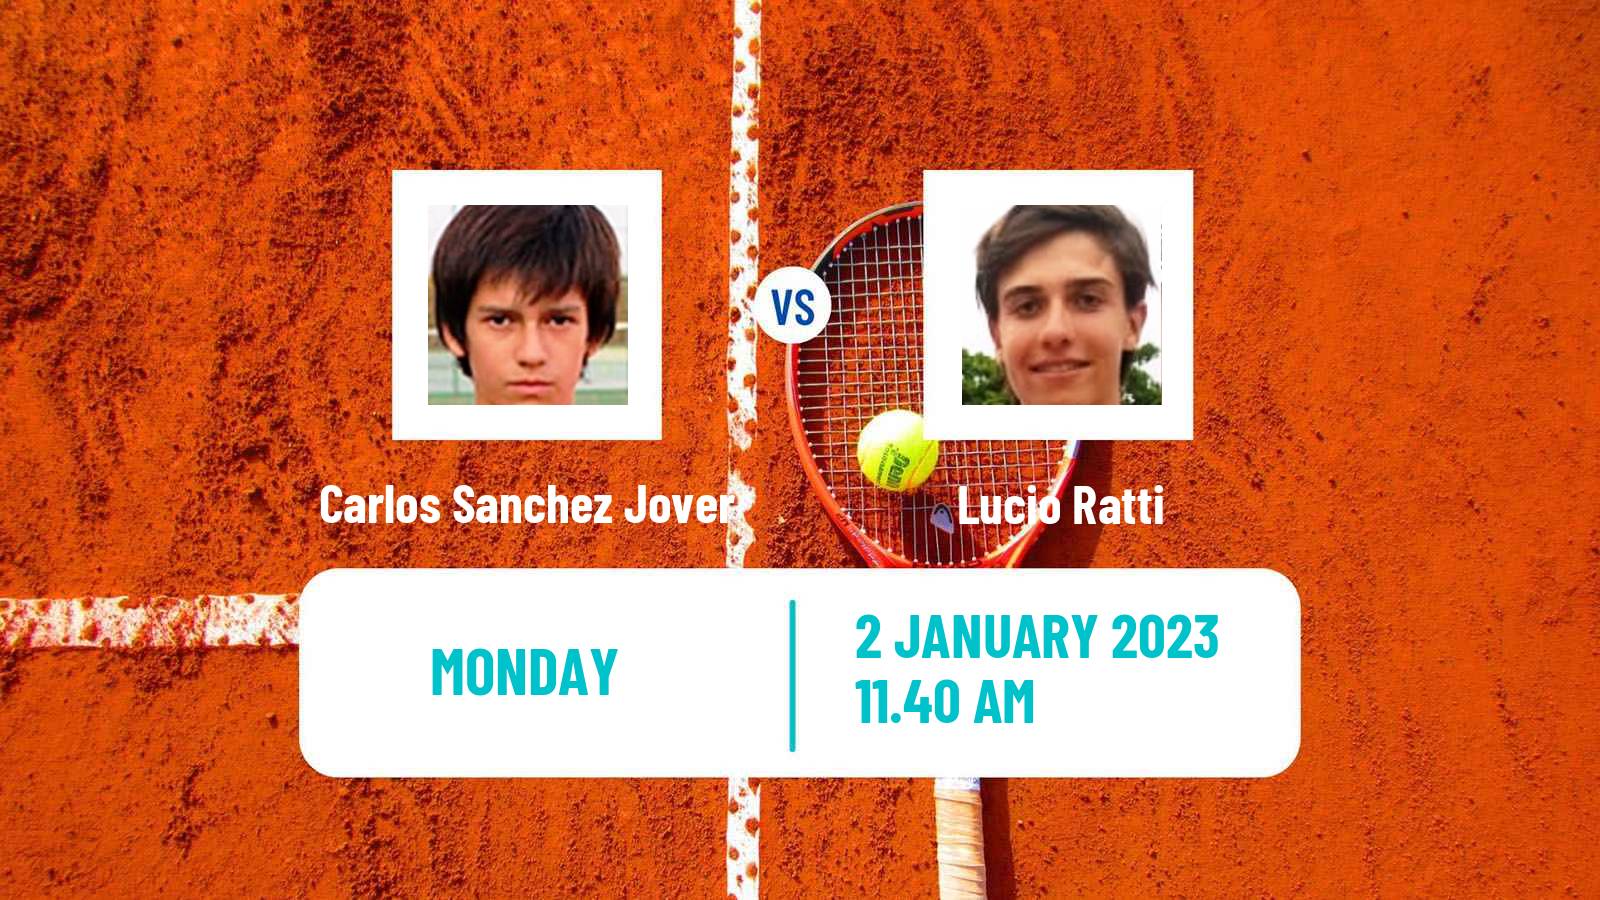 Tennis ATP Challenger Carlos Sanchez Jover - Lucio Ratti